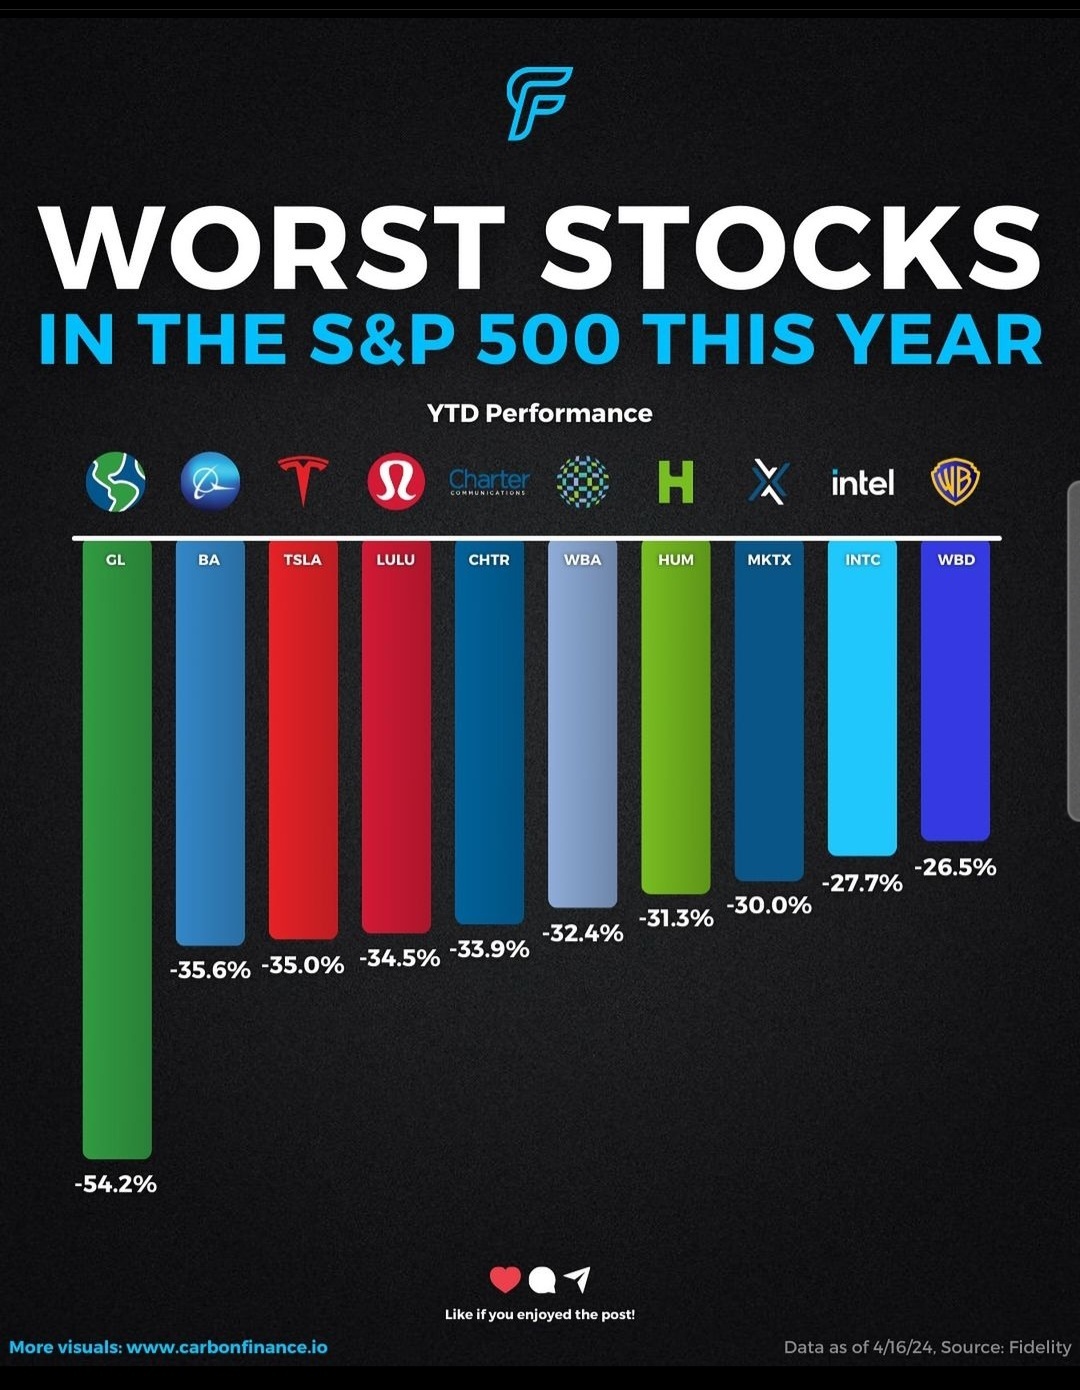 $特斯拉 (TSLA.US)$ 哈哈... 在最差的股票清单里。